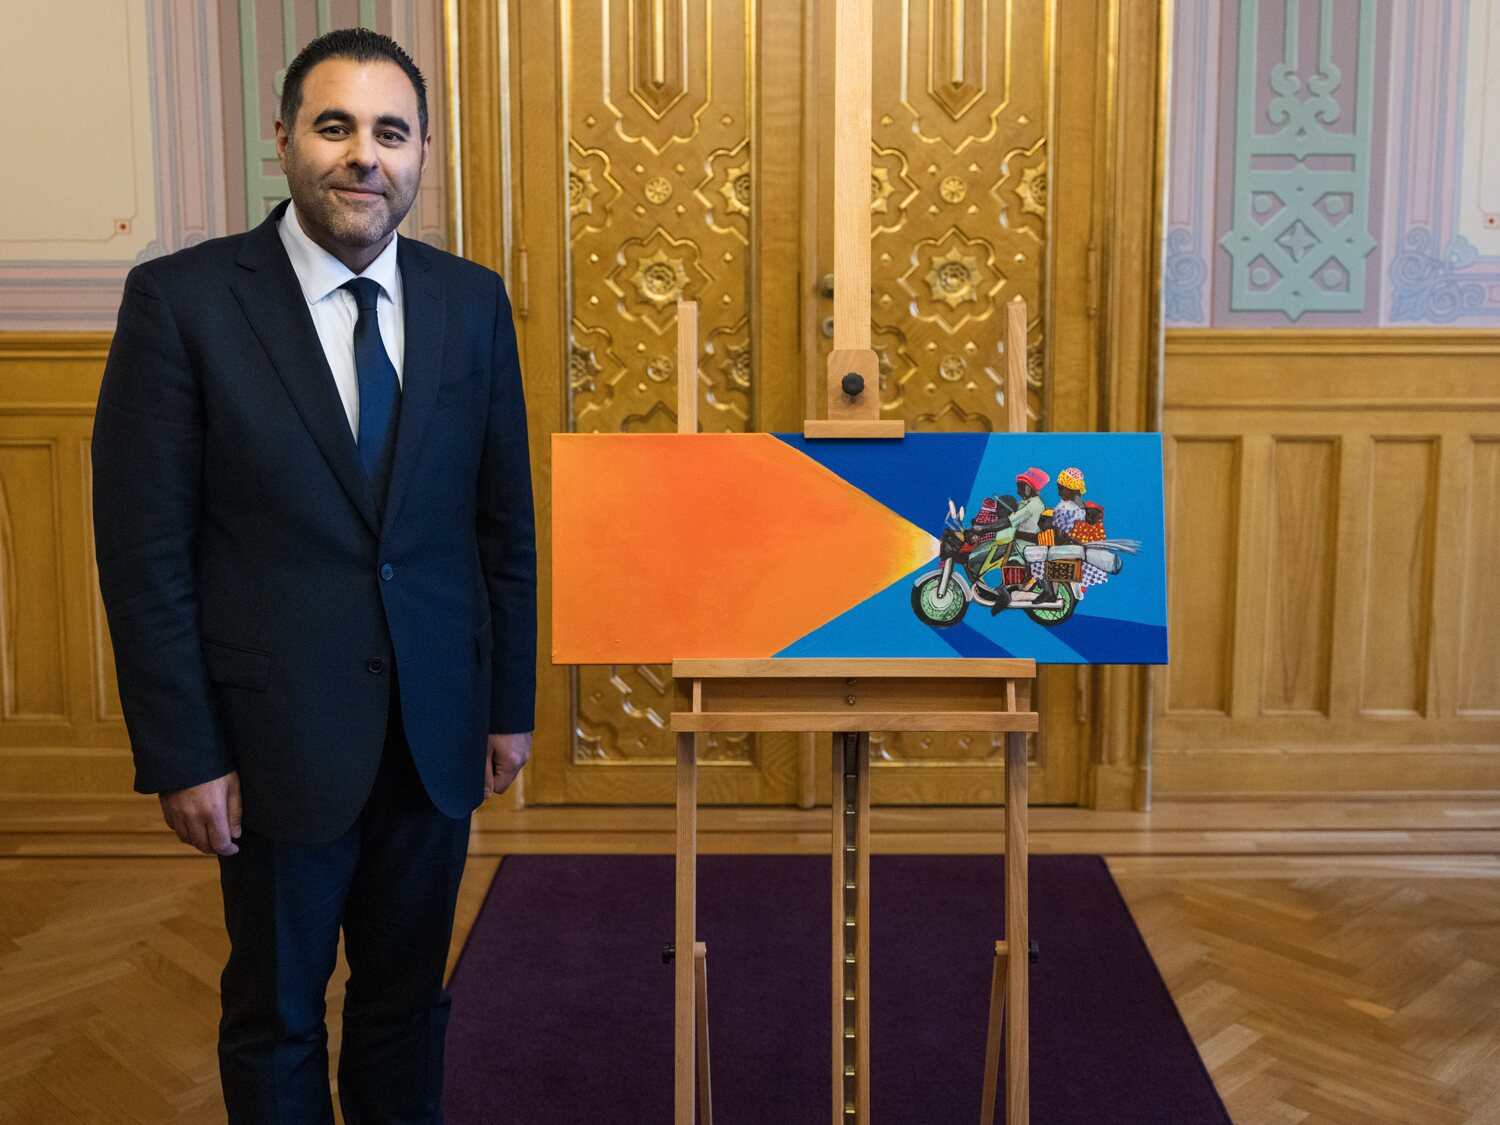 El Presidente del Storting, Masud Gharahkhani, con el cuadro que regaló al Príncipe Sverre Magnus